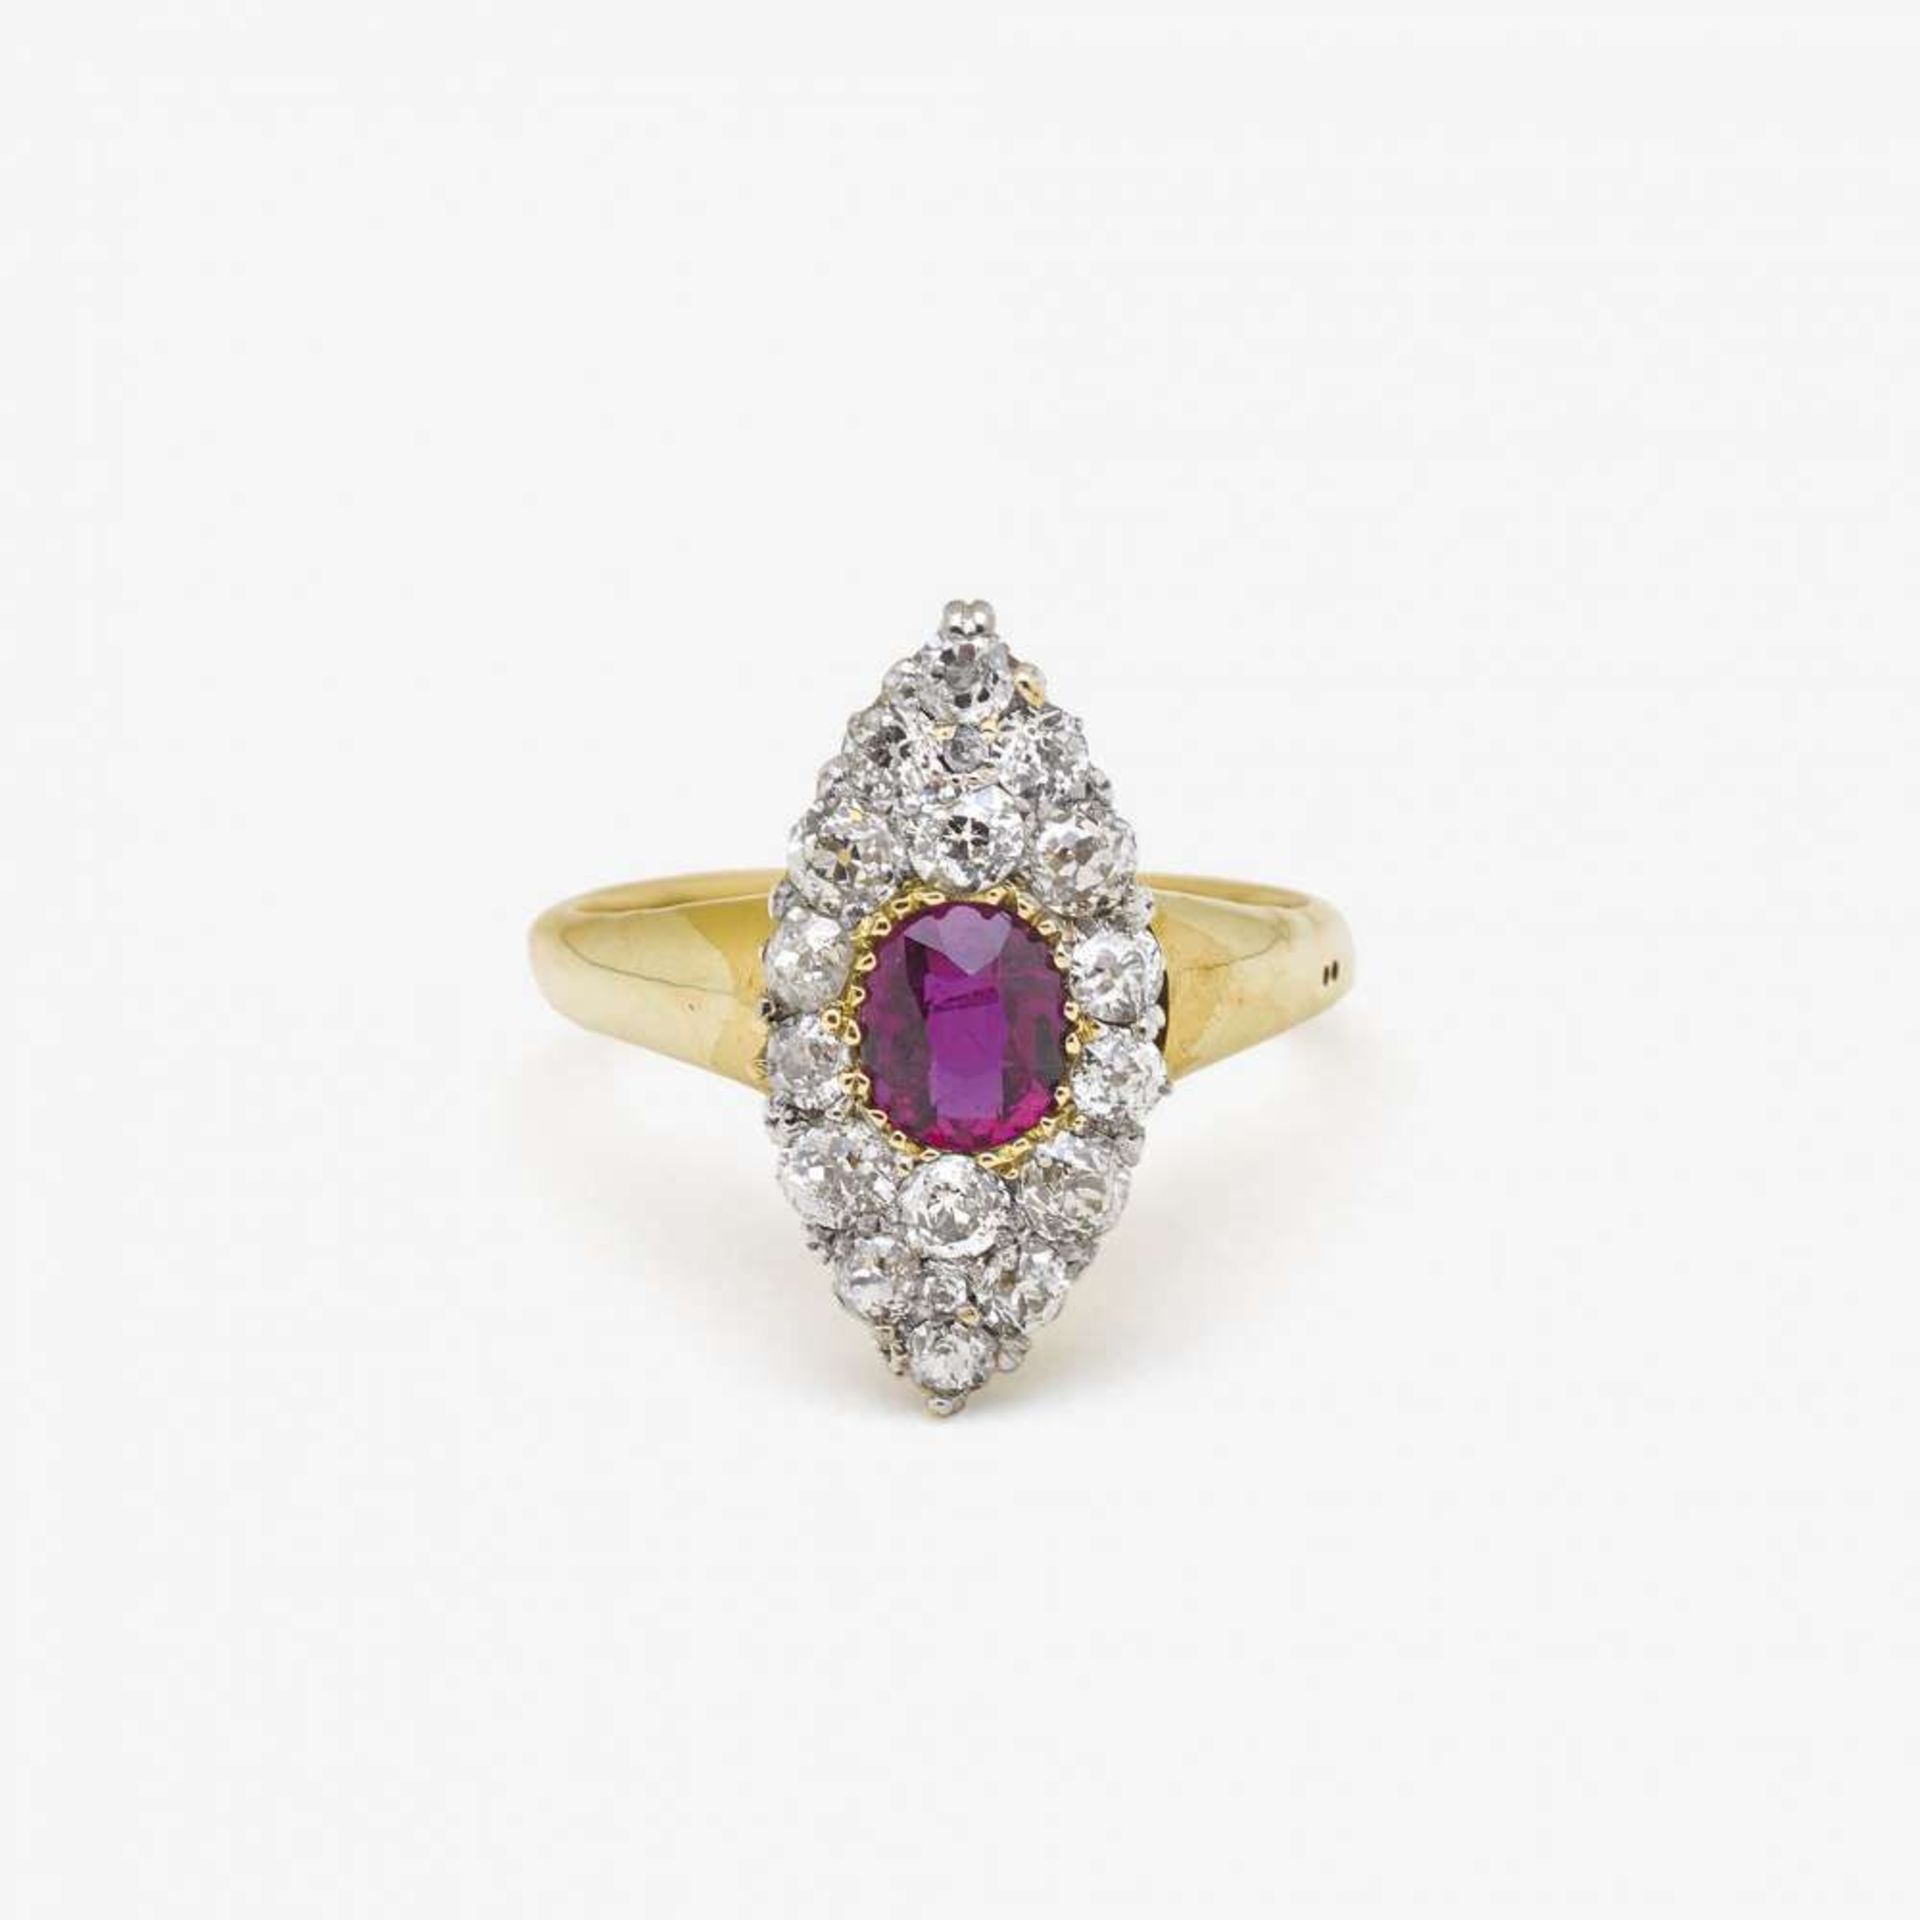 Marquisering mit Rubin und Diamanten England, Viktorianisch um 1885/1900   Gelbgold 750/-,